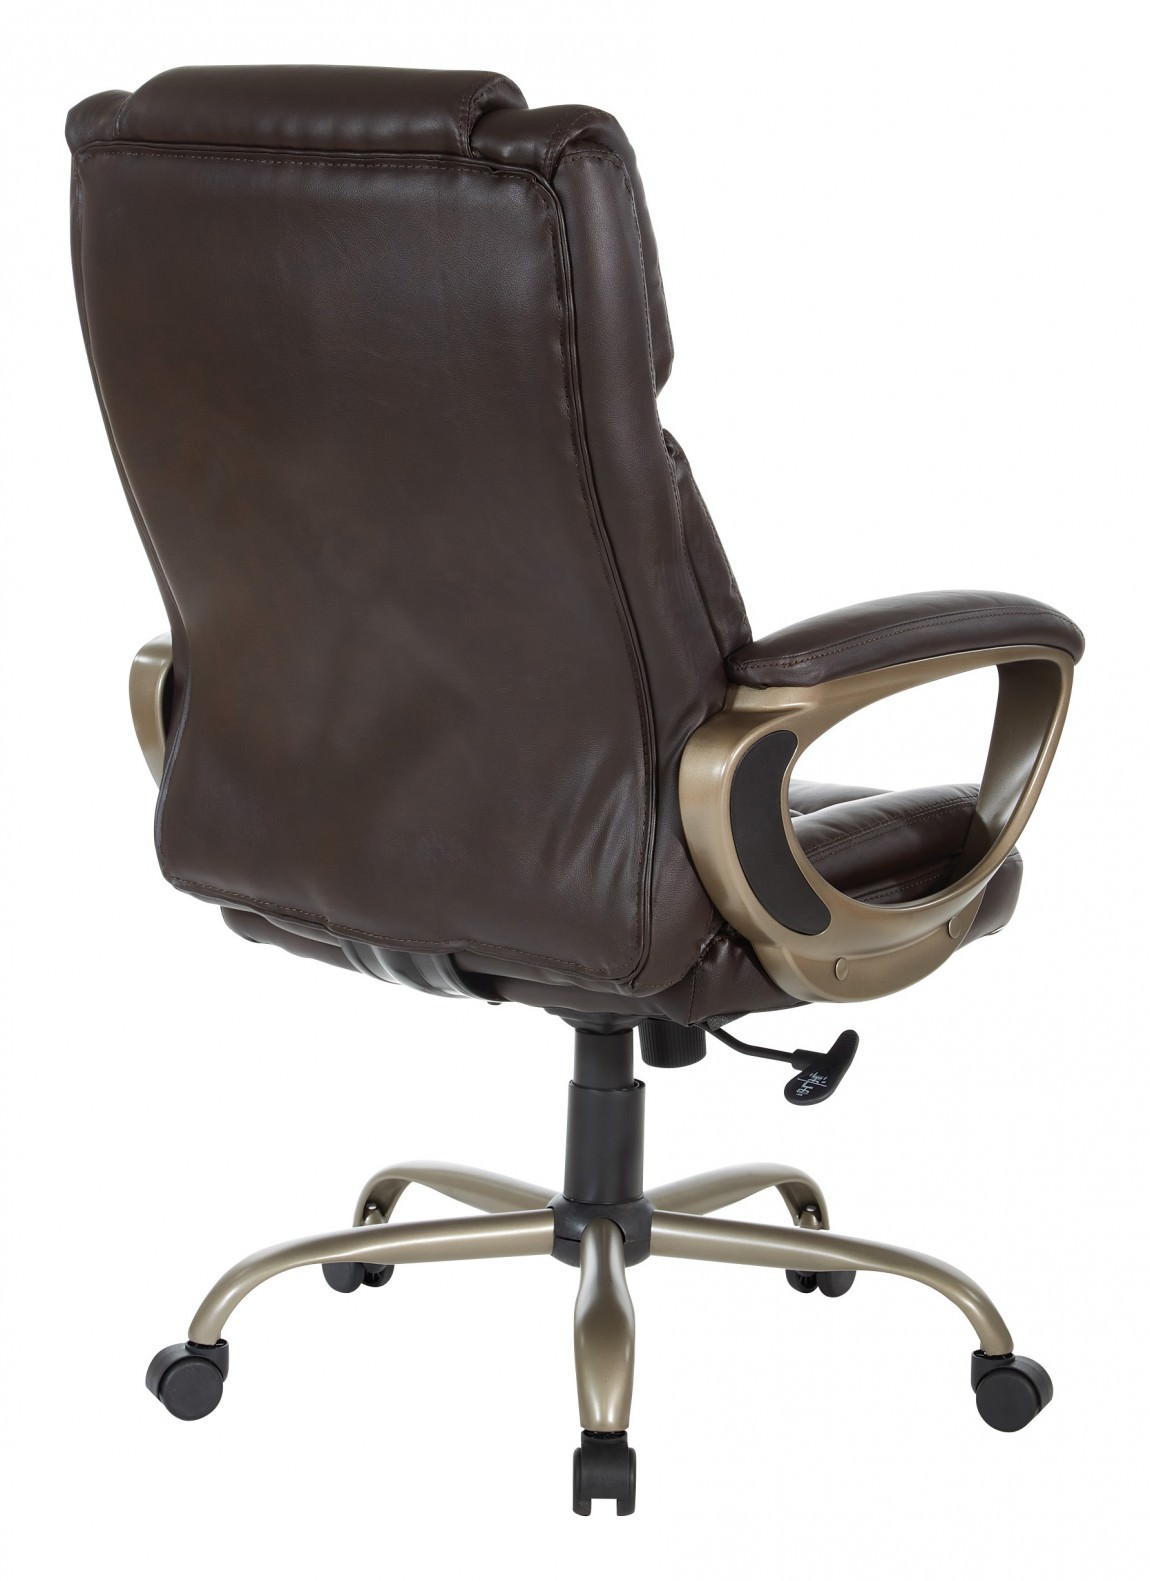 Heavy Duty Executive Office Chair